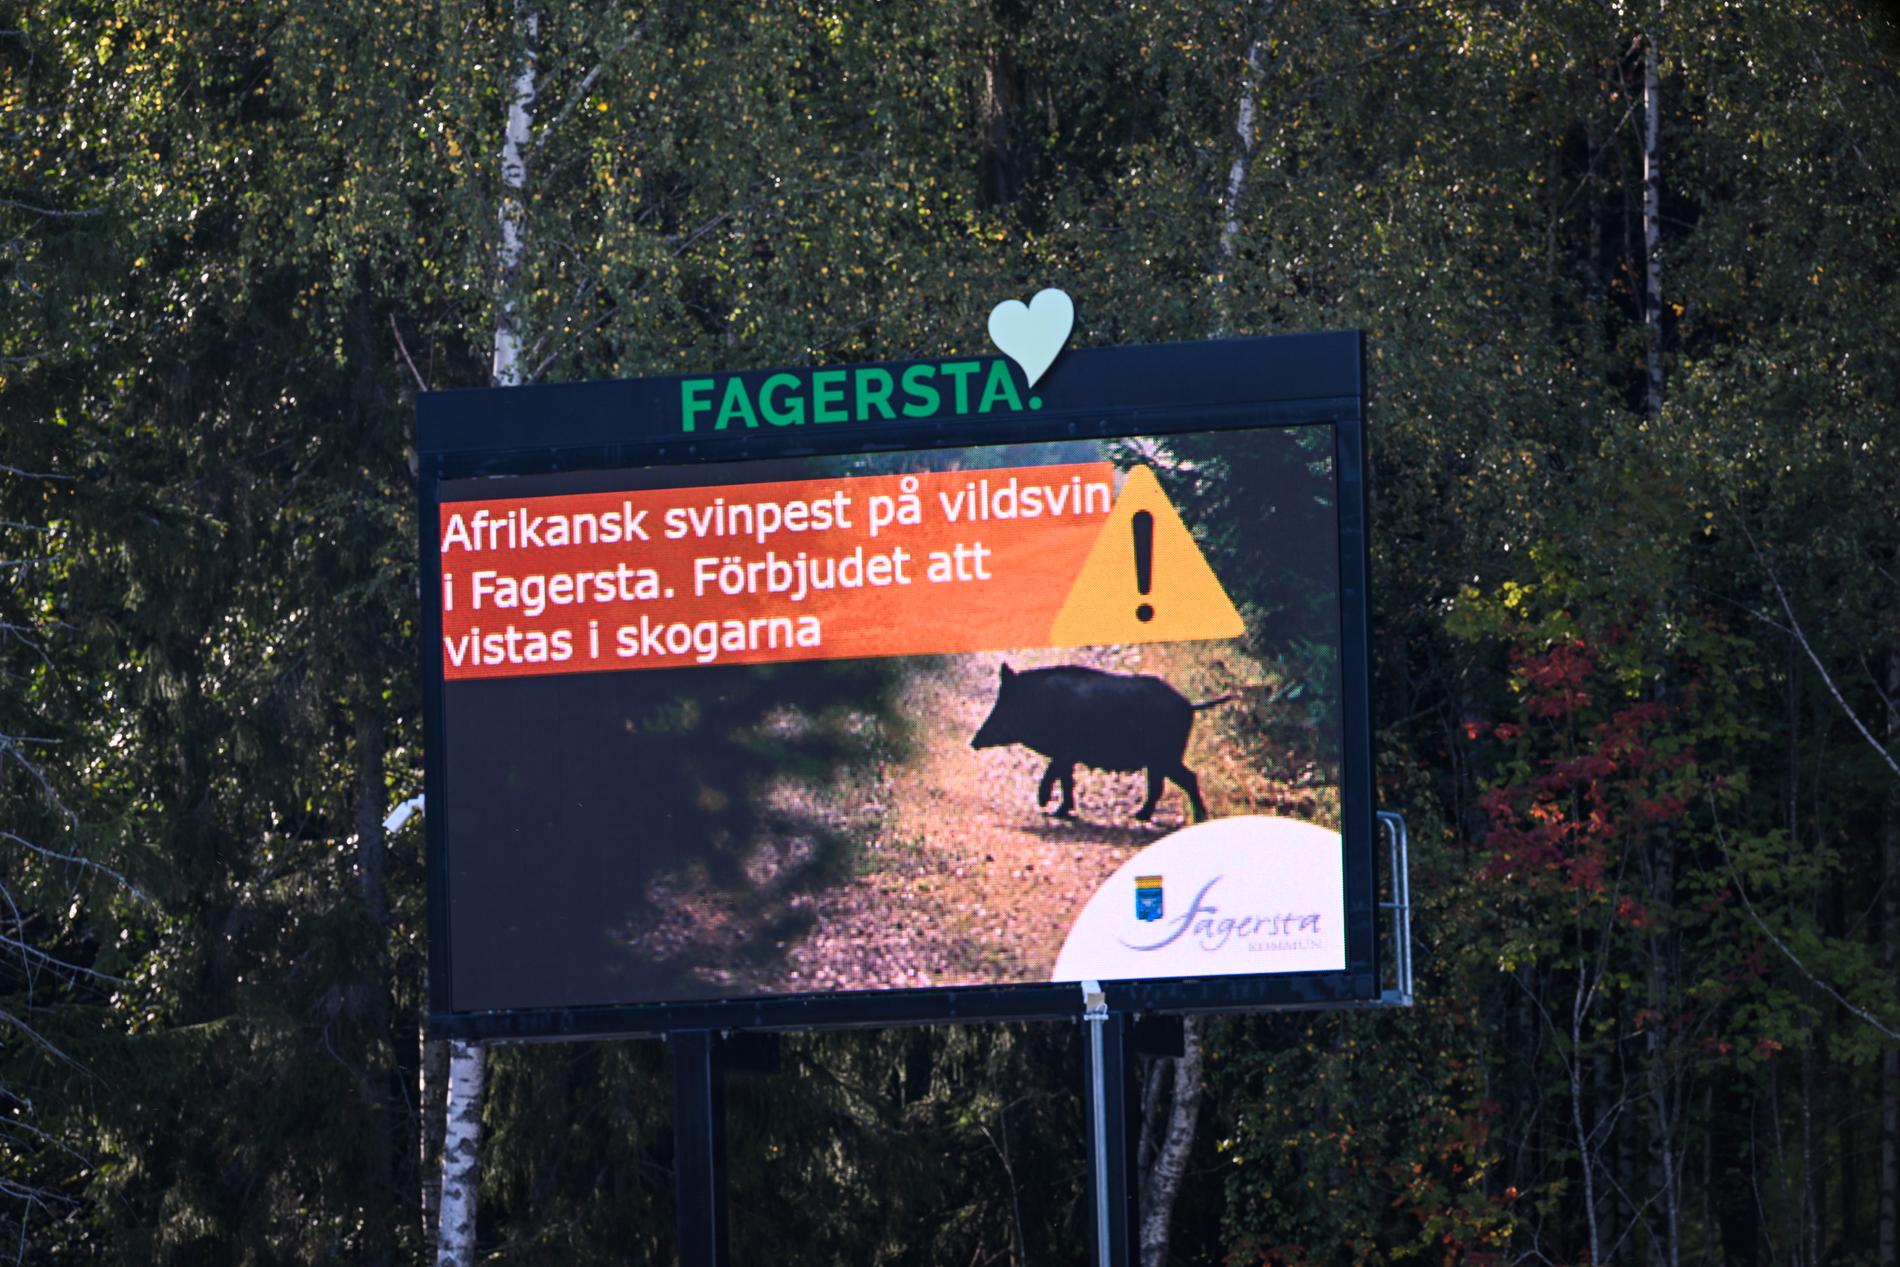 Skylt uppsatt av Fagersta kommun med texten "Afrikansk svinpest på vildsvin i Fagersta. Förbjudet att visats i skogarna", med anledning av utbrottet av afrikansk svinpest.